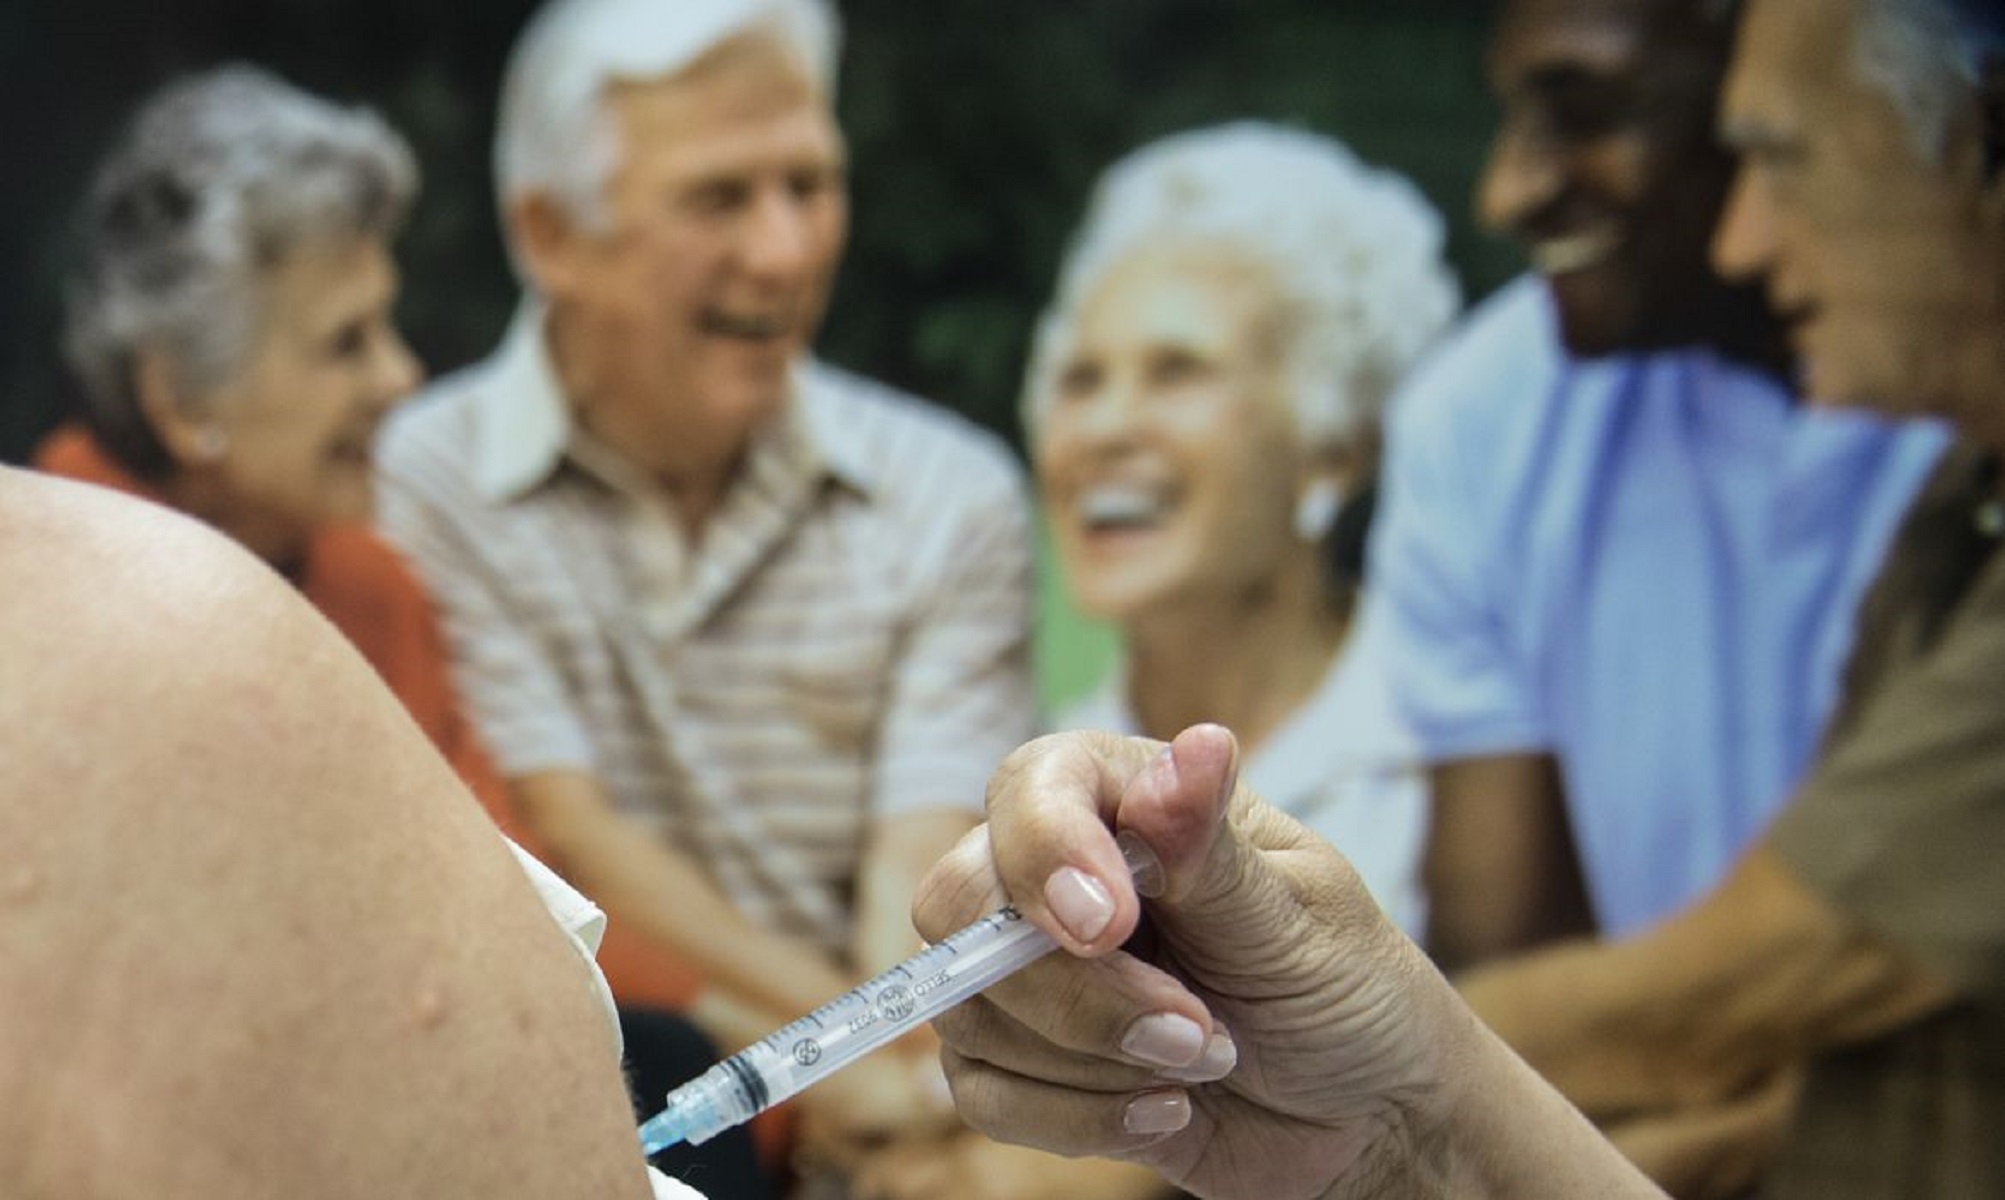 Ministério da Saúde recomenda segunda dose de reforço para idosos acima de 80 anos